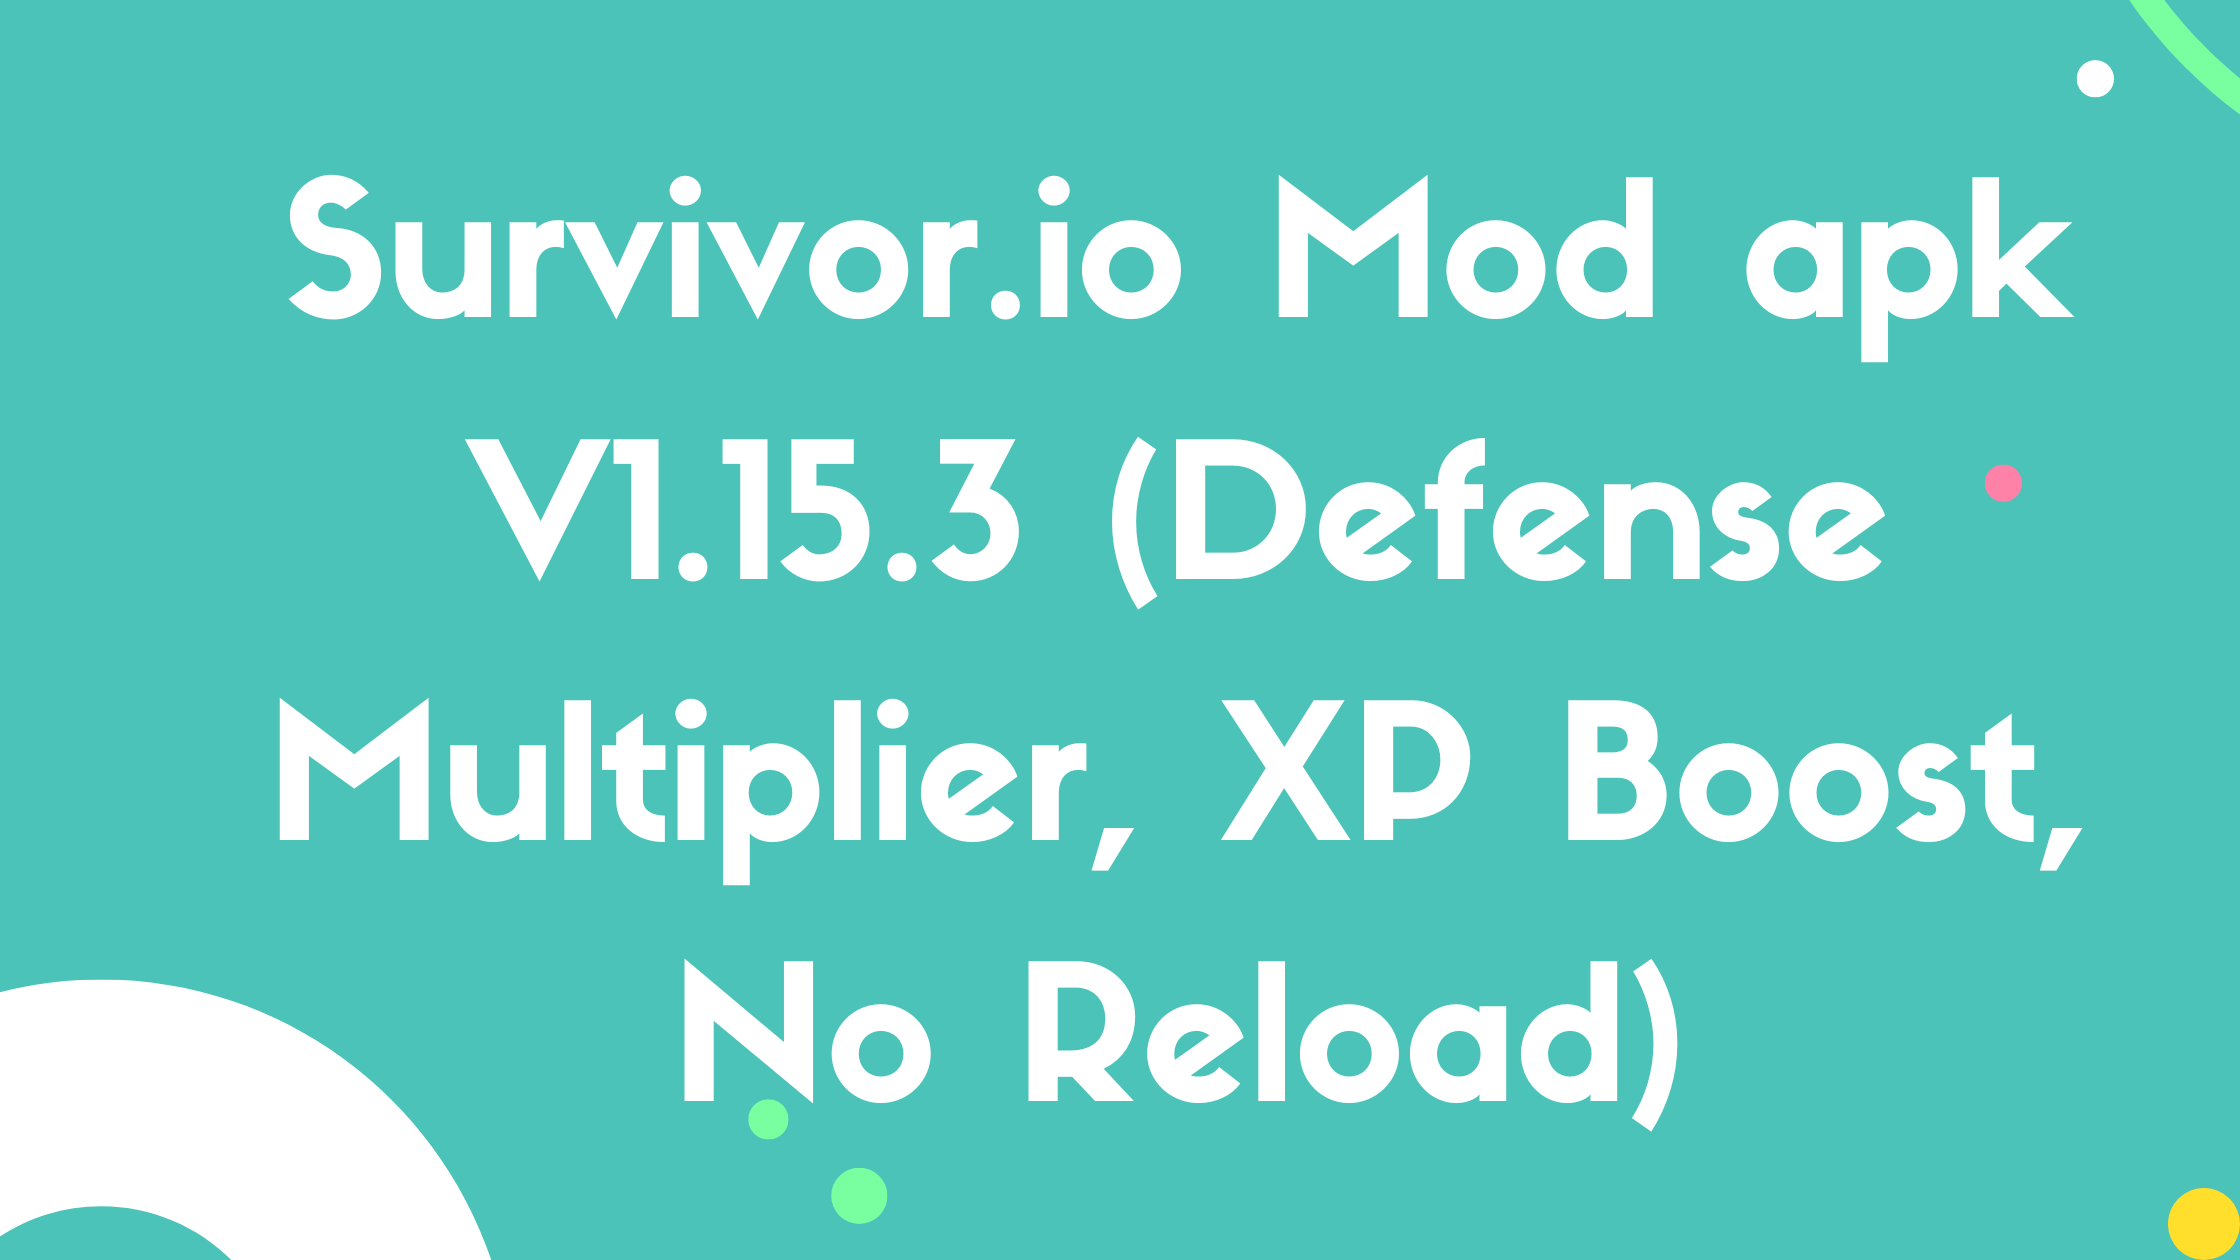 Survivor.io Mod apk V1.15.3 (Defense Multiplier, XP Boost, No Reload)